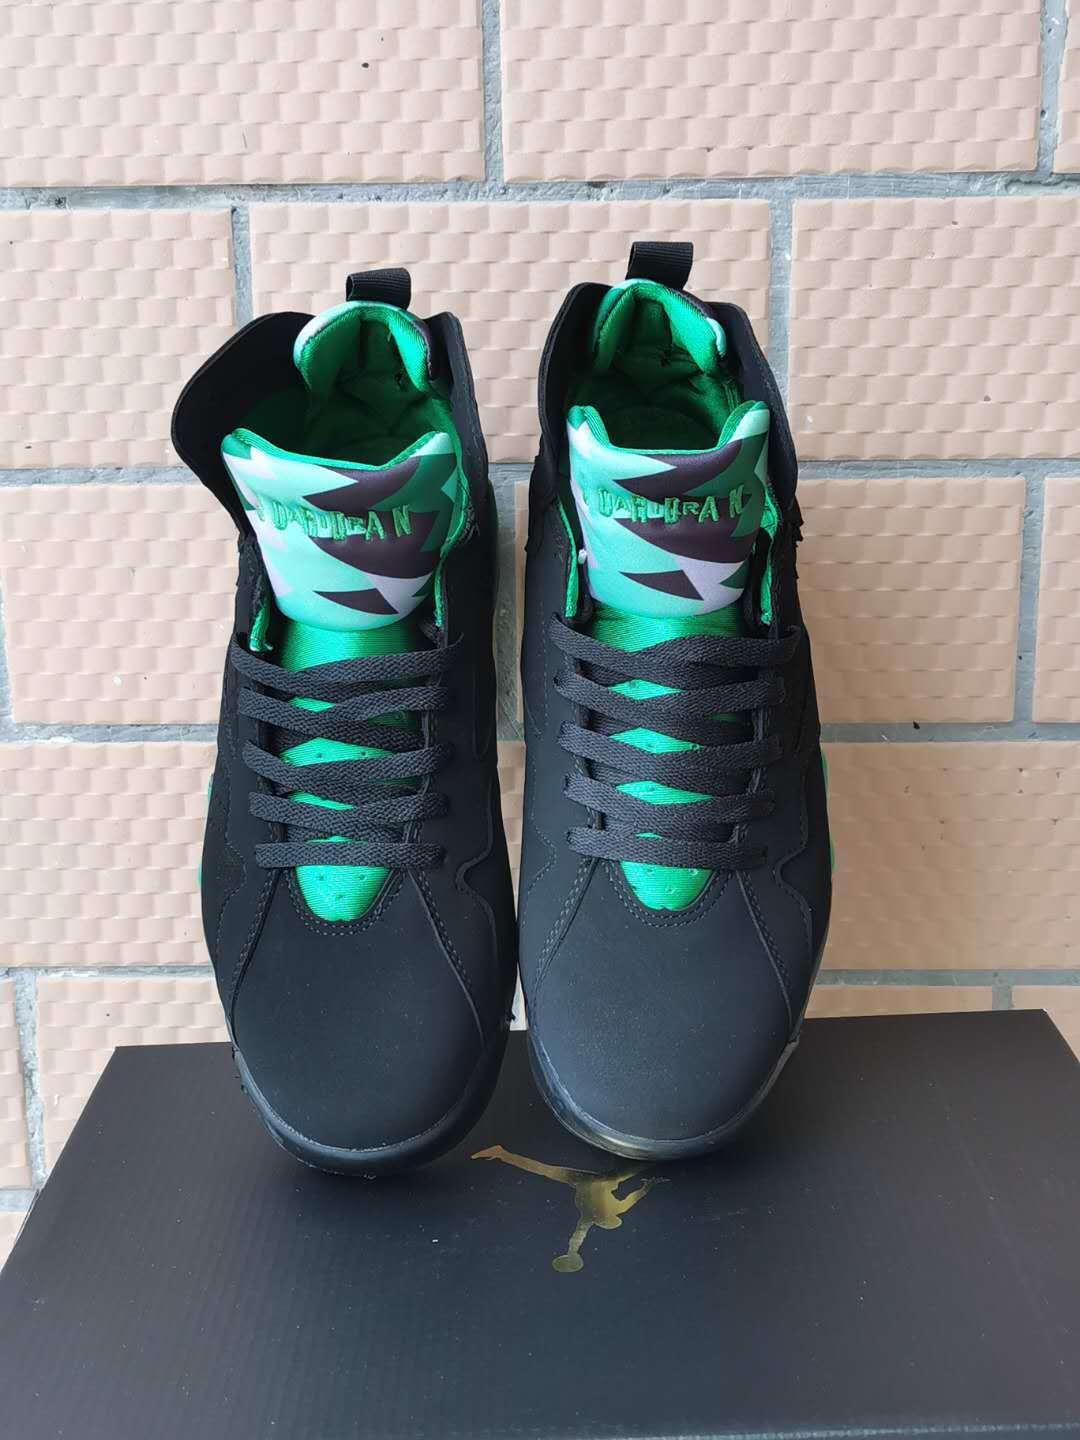 New Men Air Jordan 7 Shoes Black Green - Click Image to Close